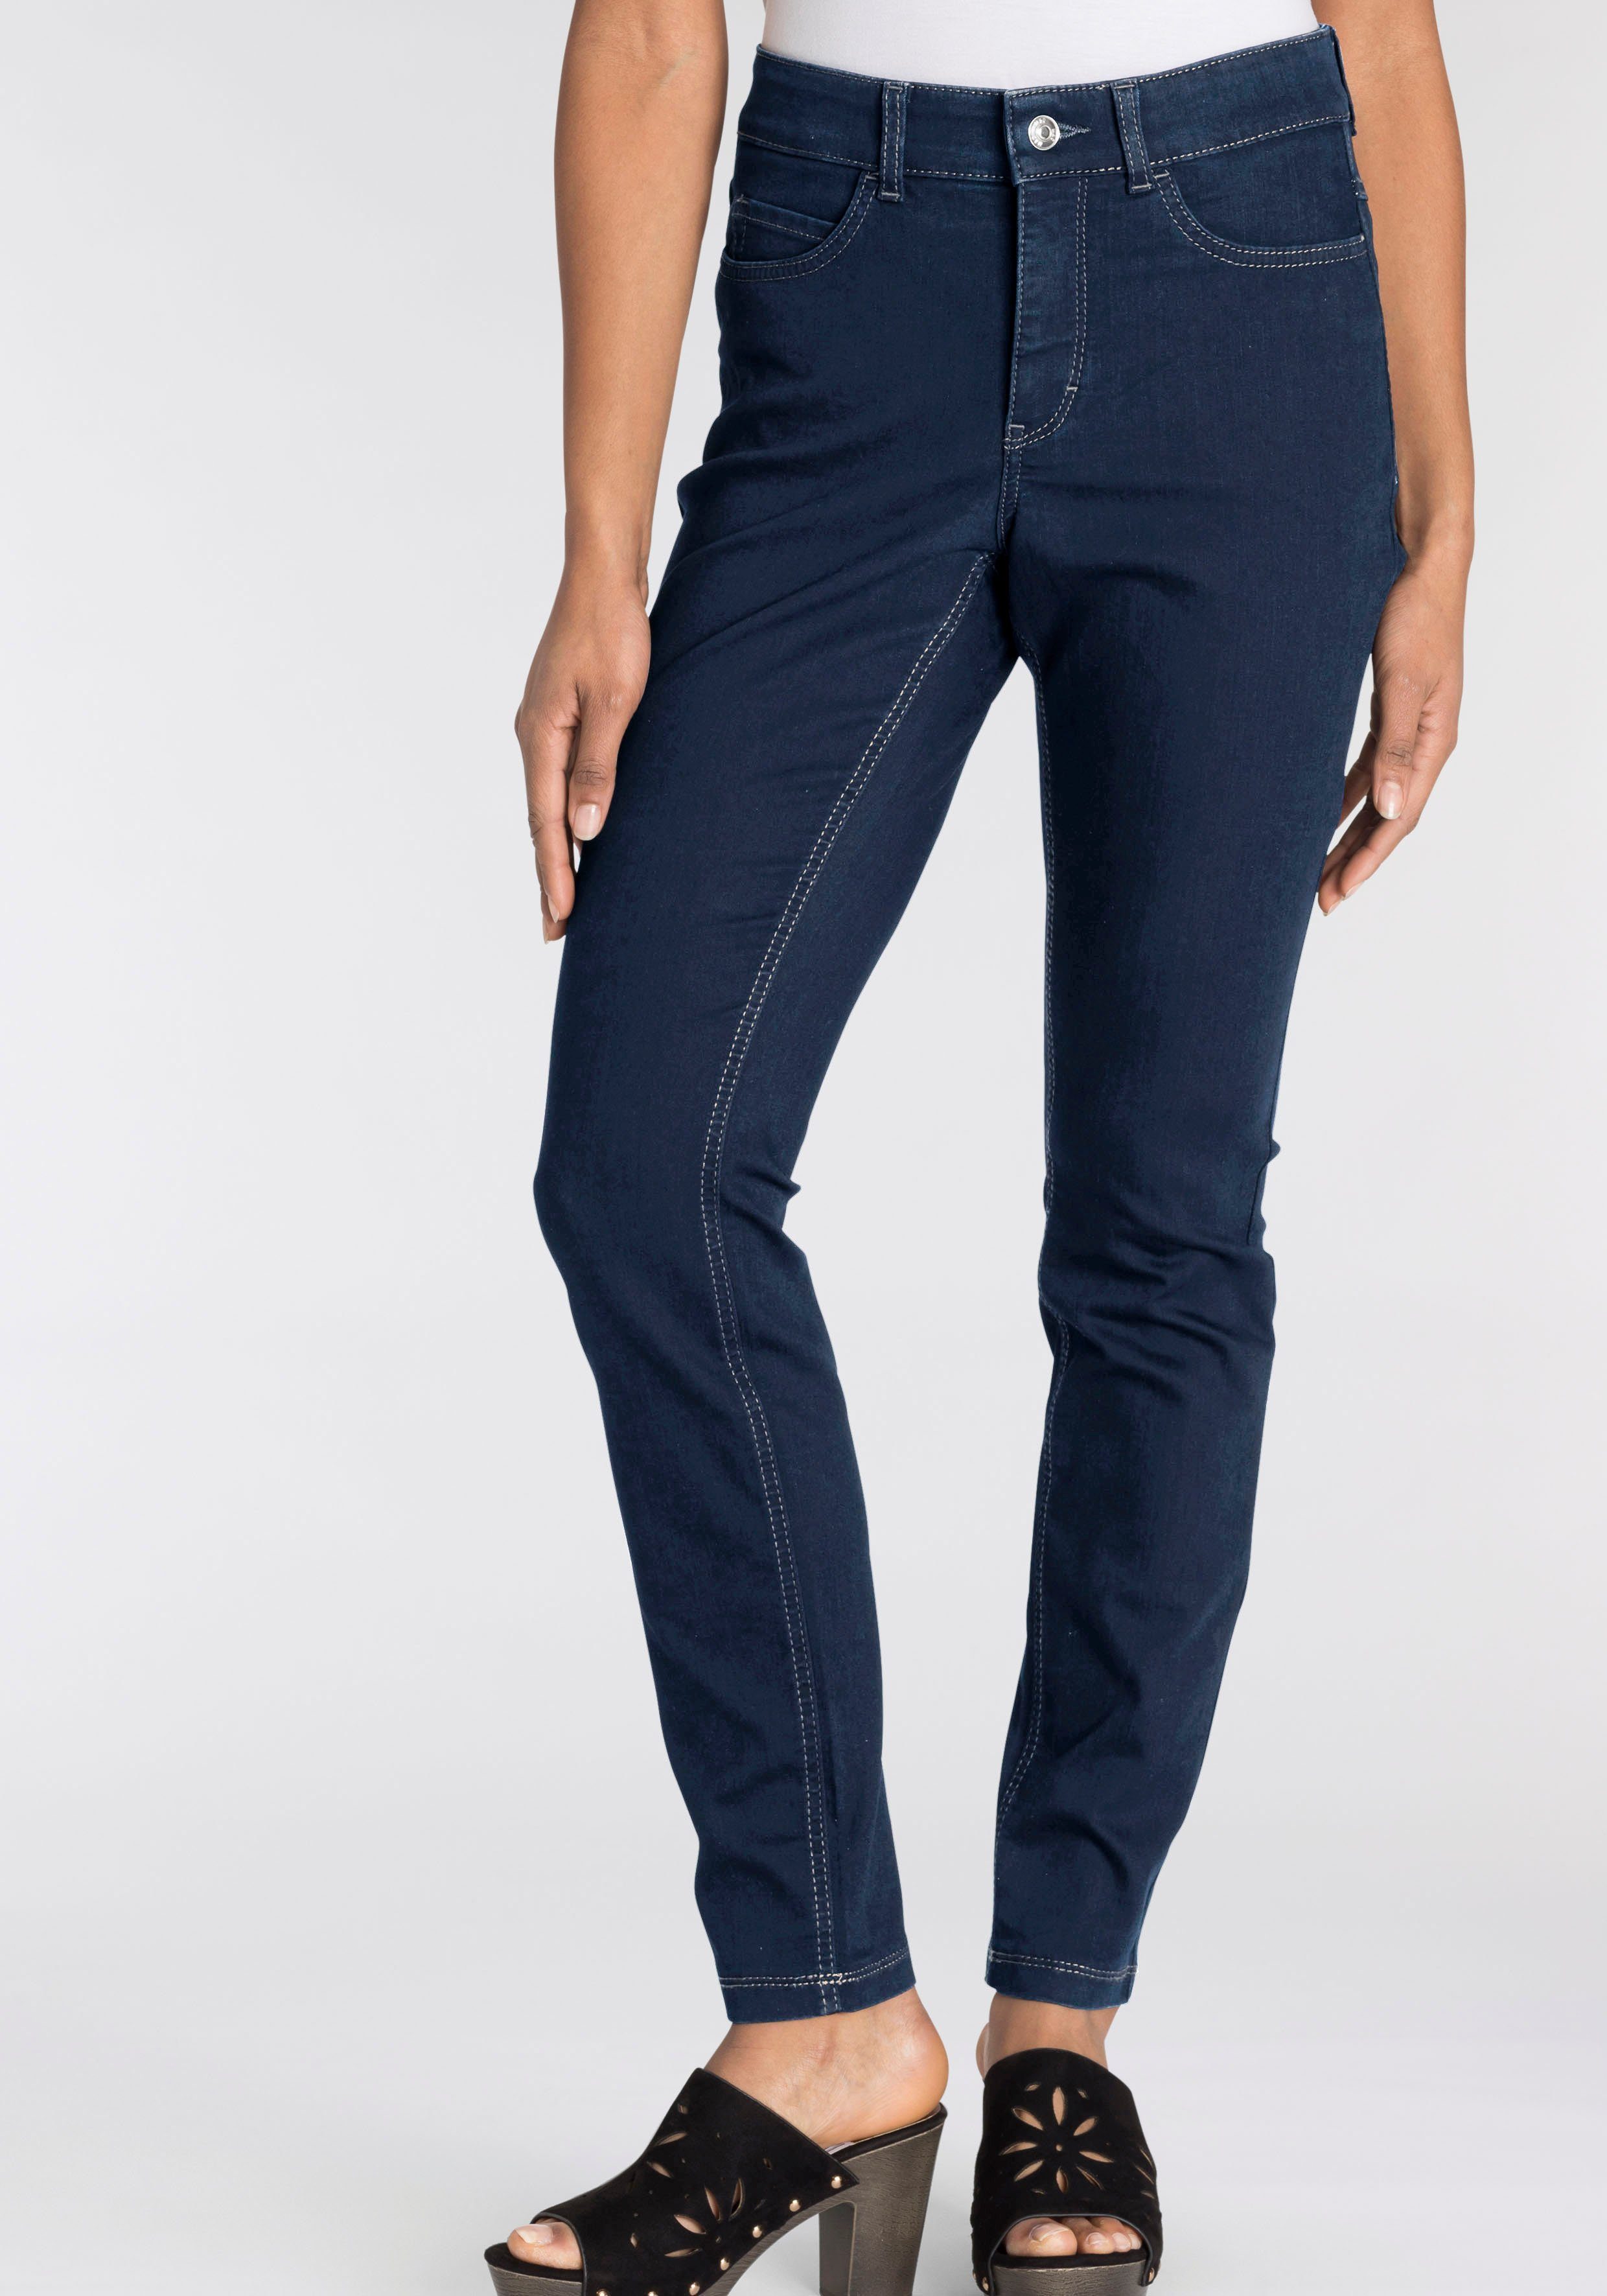 Tag basic ganzen Power-Stretch wash Hiperstretch-Skinny Skinny-fit-Jeans den Qualität sitzt blue MAC new dark bequem